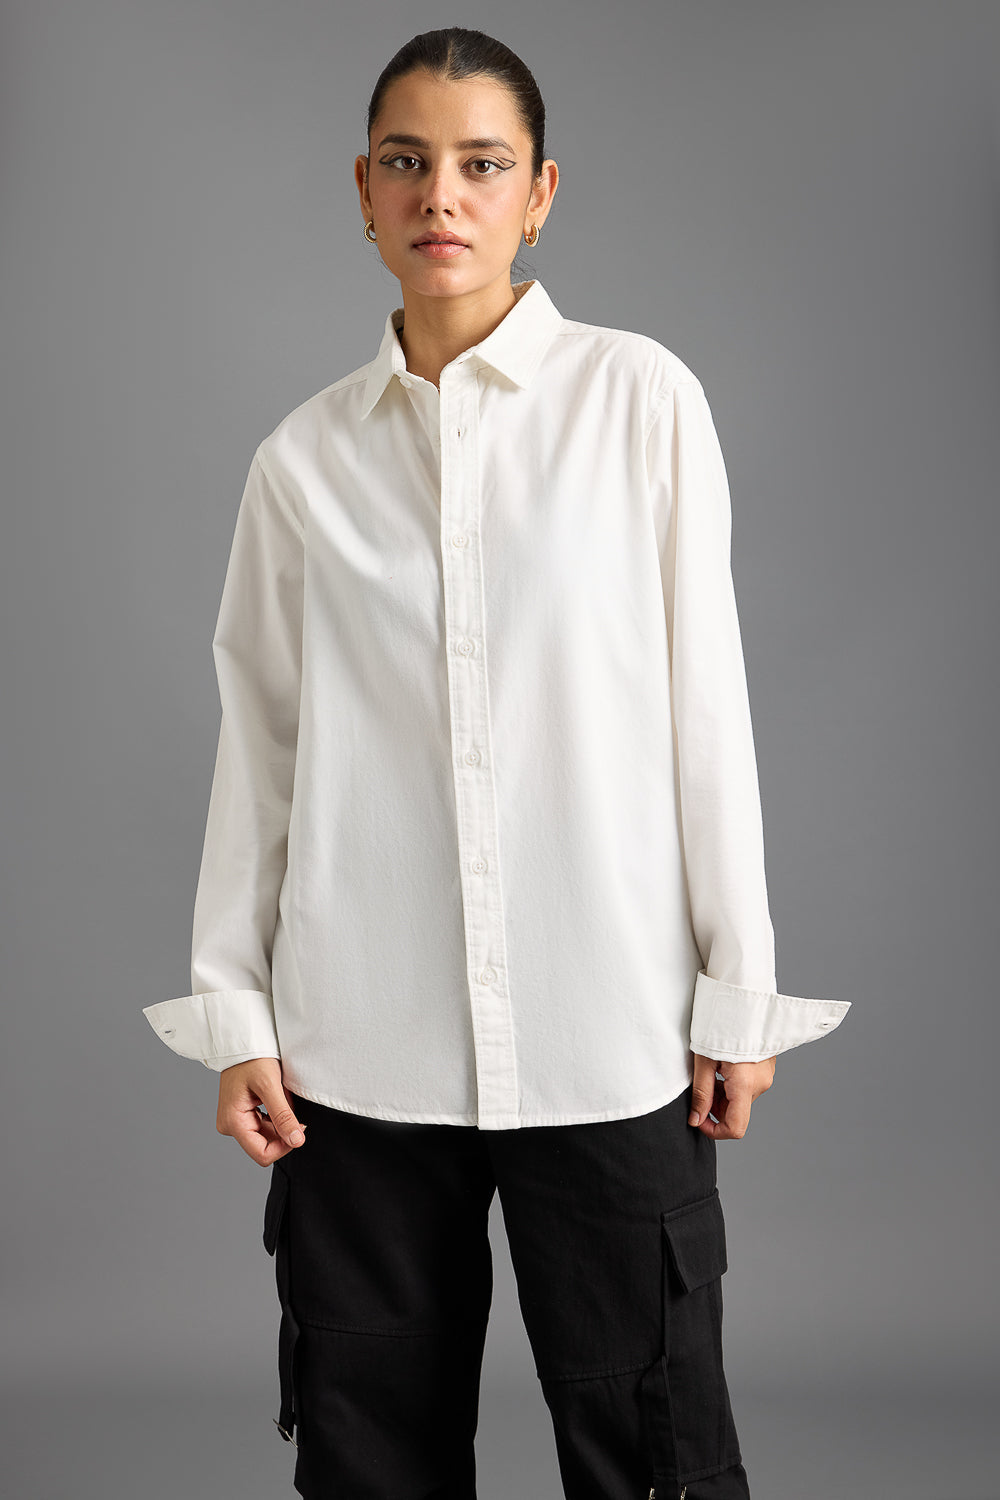 Easy Twill White Women's Regular Fit Shirt